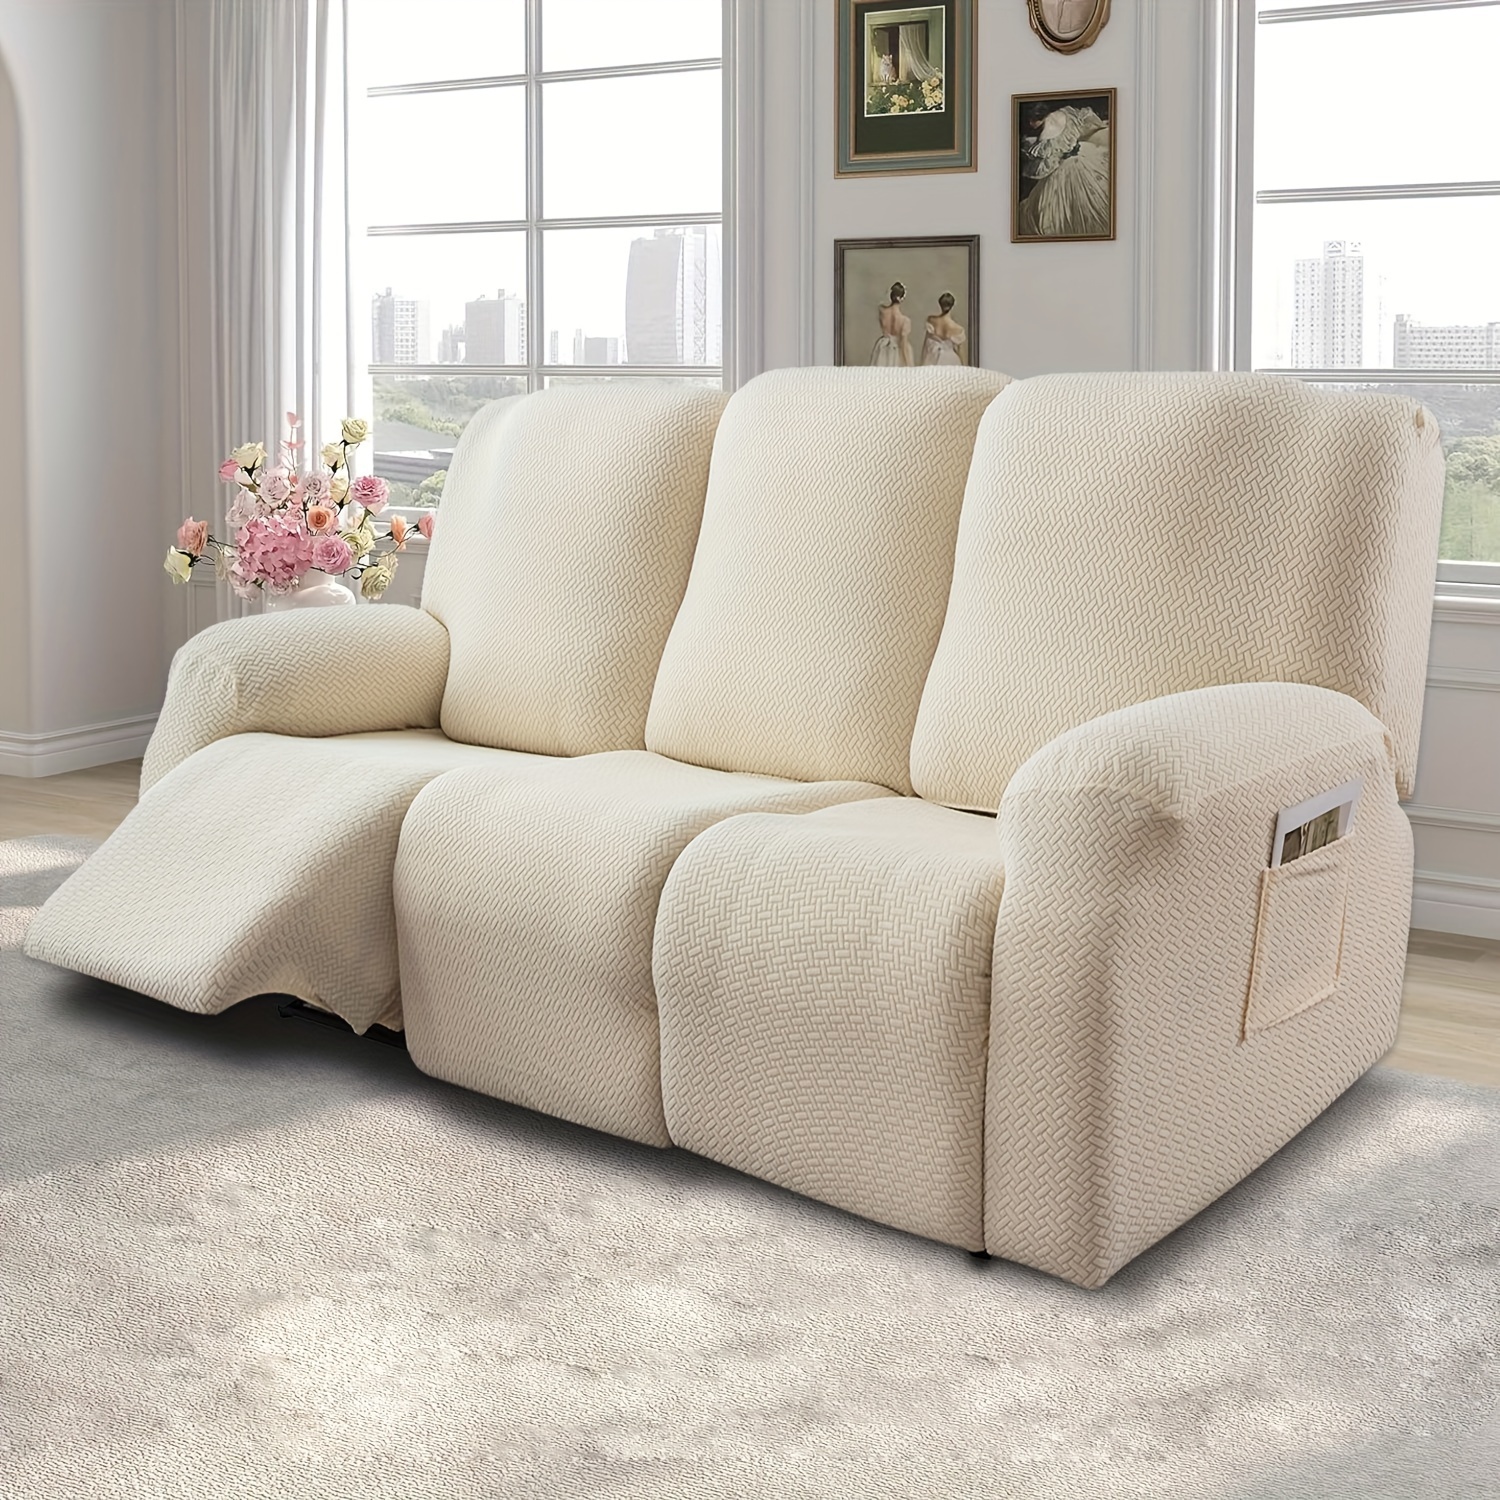  Reyox Fundas de cojín elásticas jacquard para sofá, fundas  individuales, cojines suaves y elásticos ajustables a tu sofá, fundas de  asiento de silla, fundas de sofá biplaza, protector de muebles  antideslizante